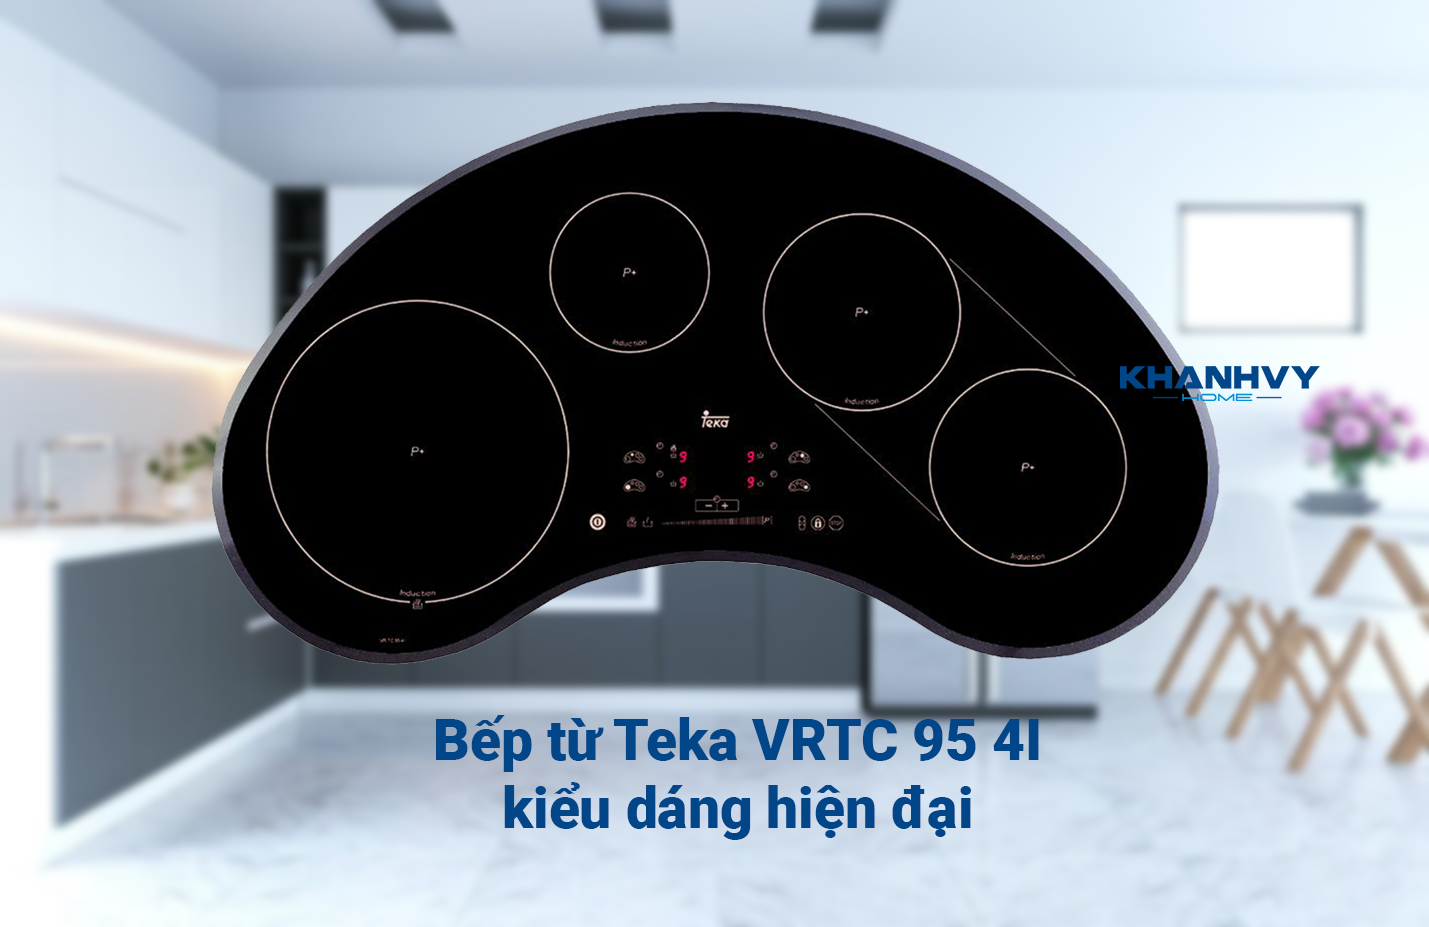 Bếp từ Teka VRTC 95 4I mang sự hiện đại đến cho không gian bếp